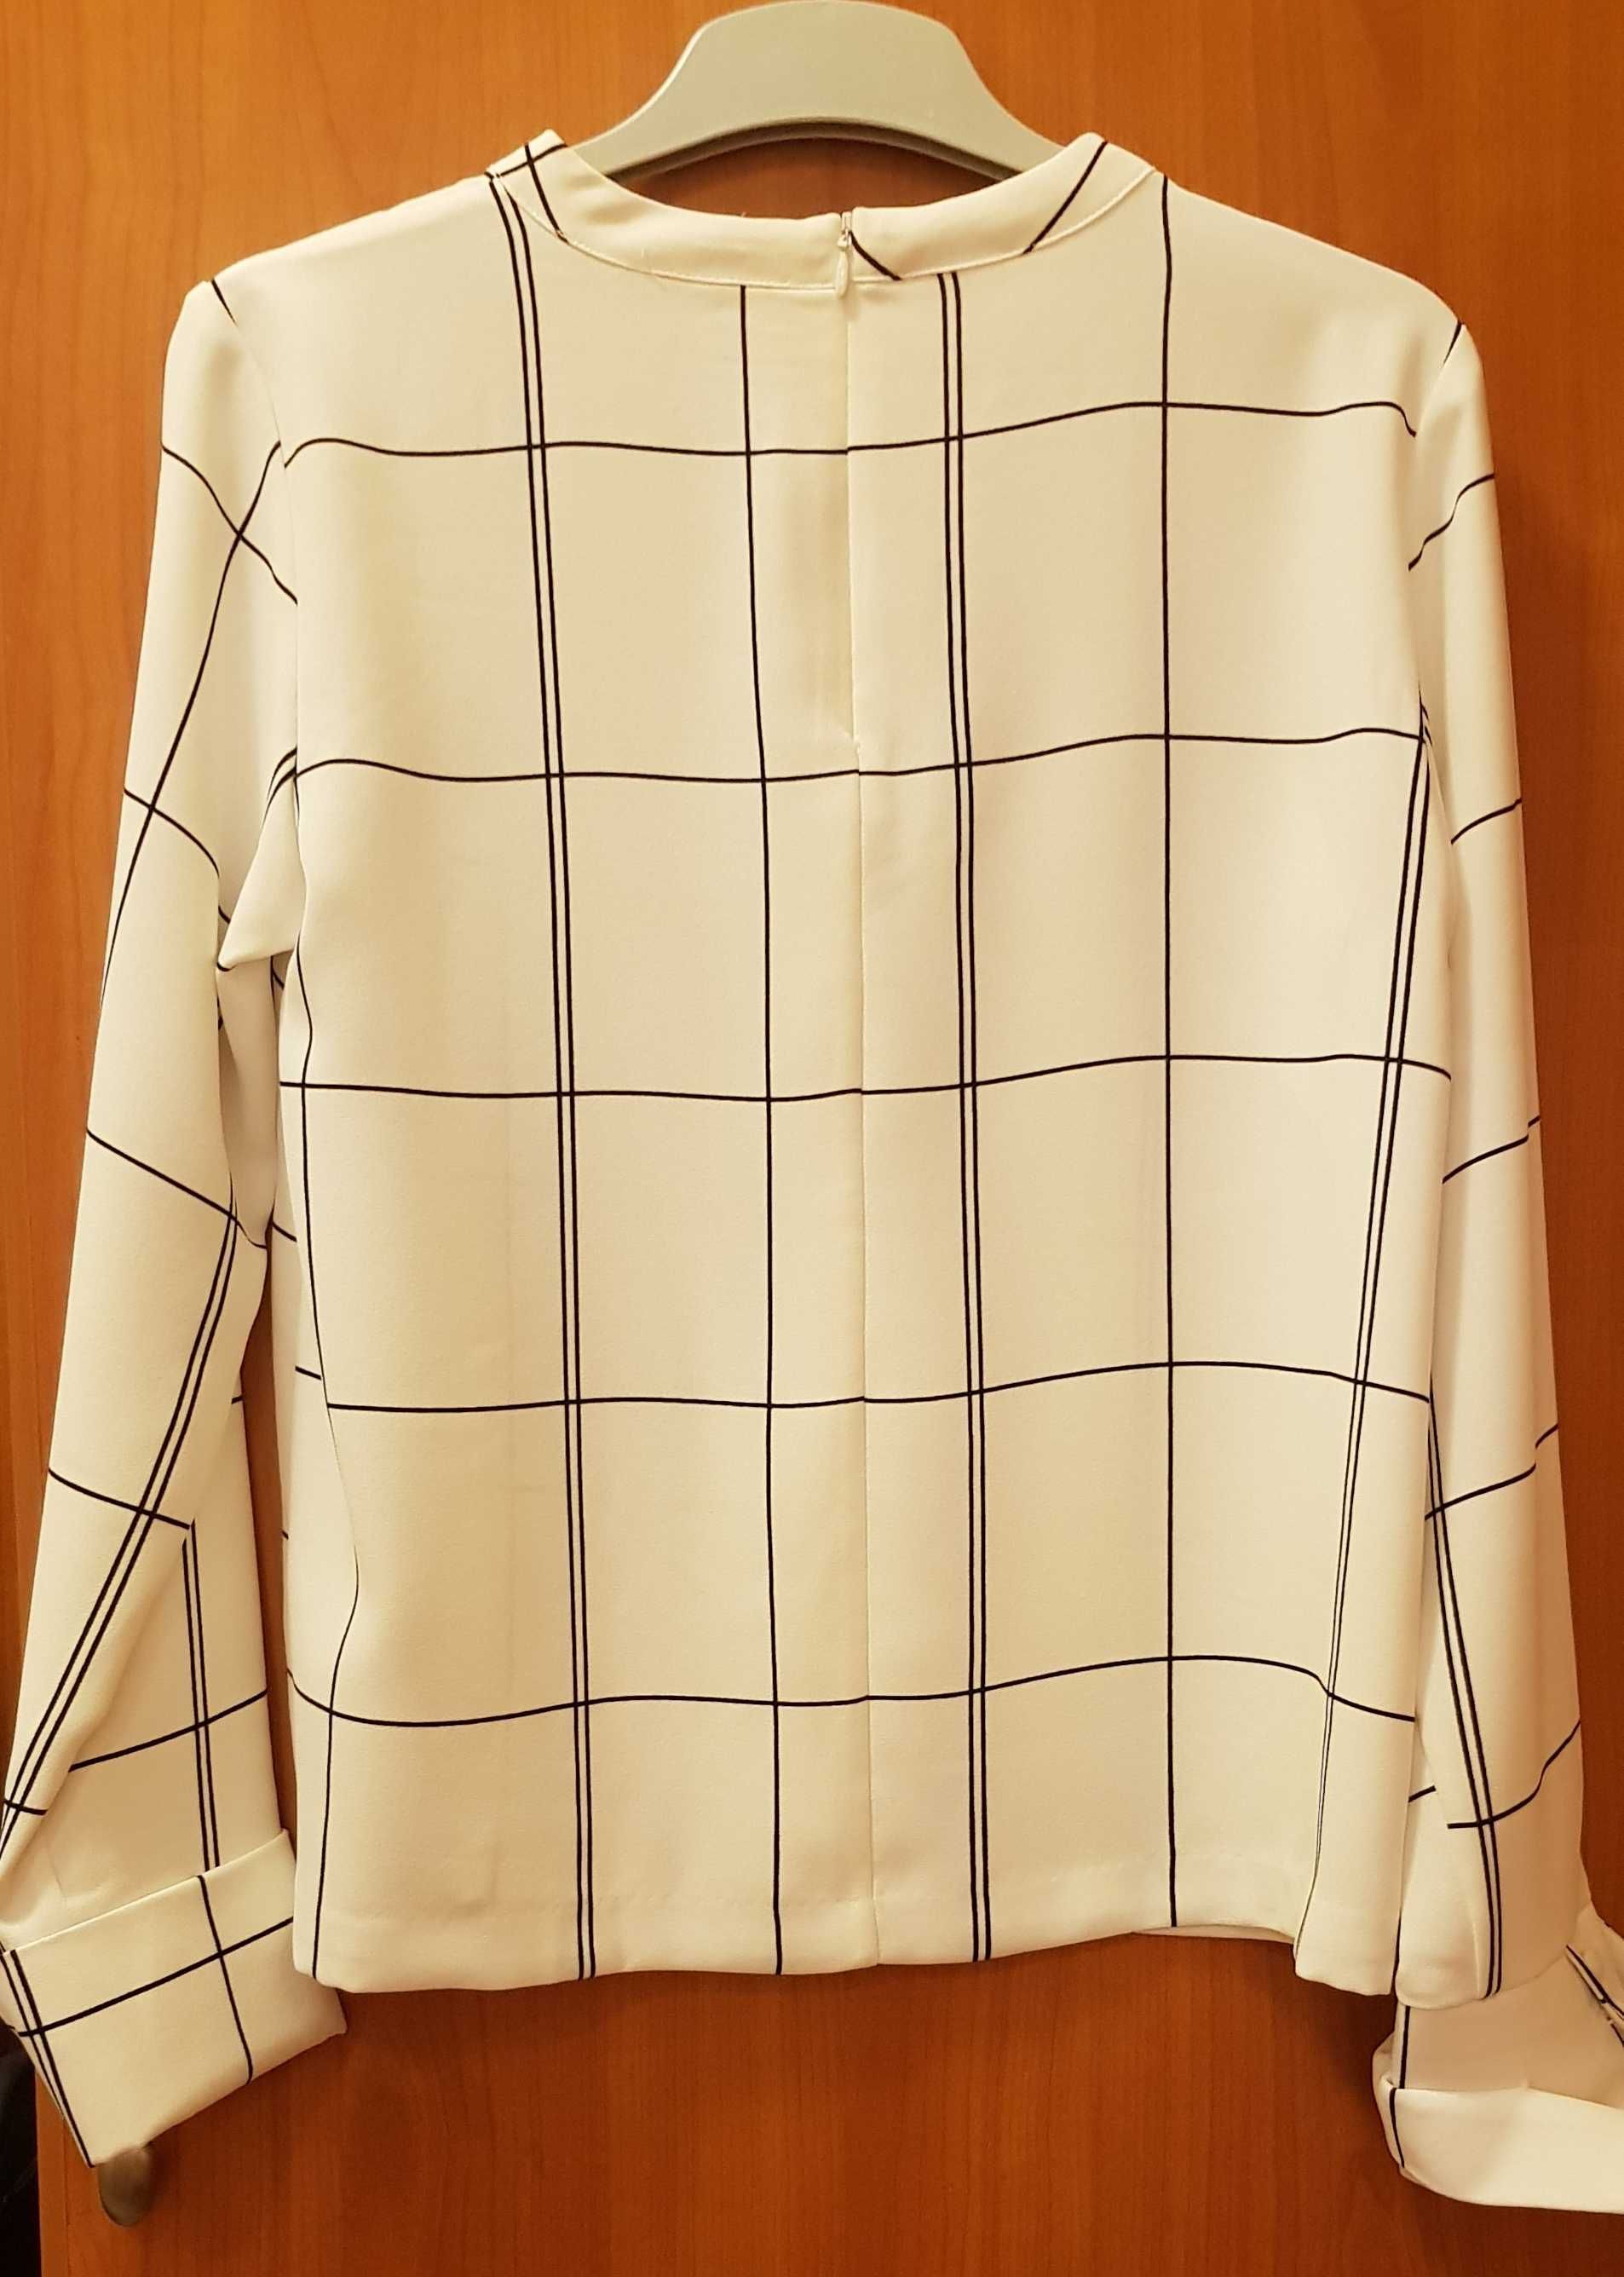 Bluzka damska biała z szeroką czarną kratą firmy H&M, rozmiar 38.